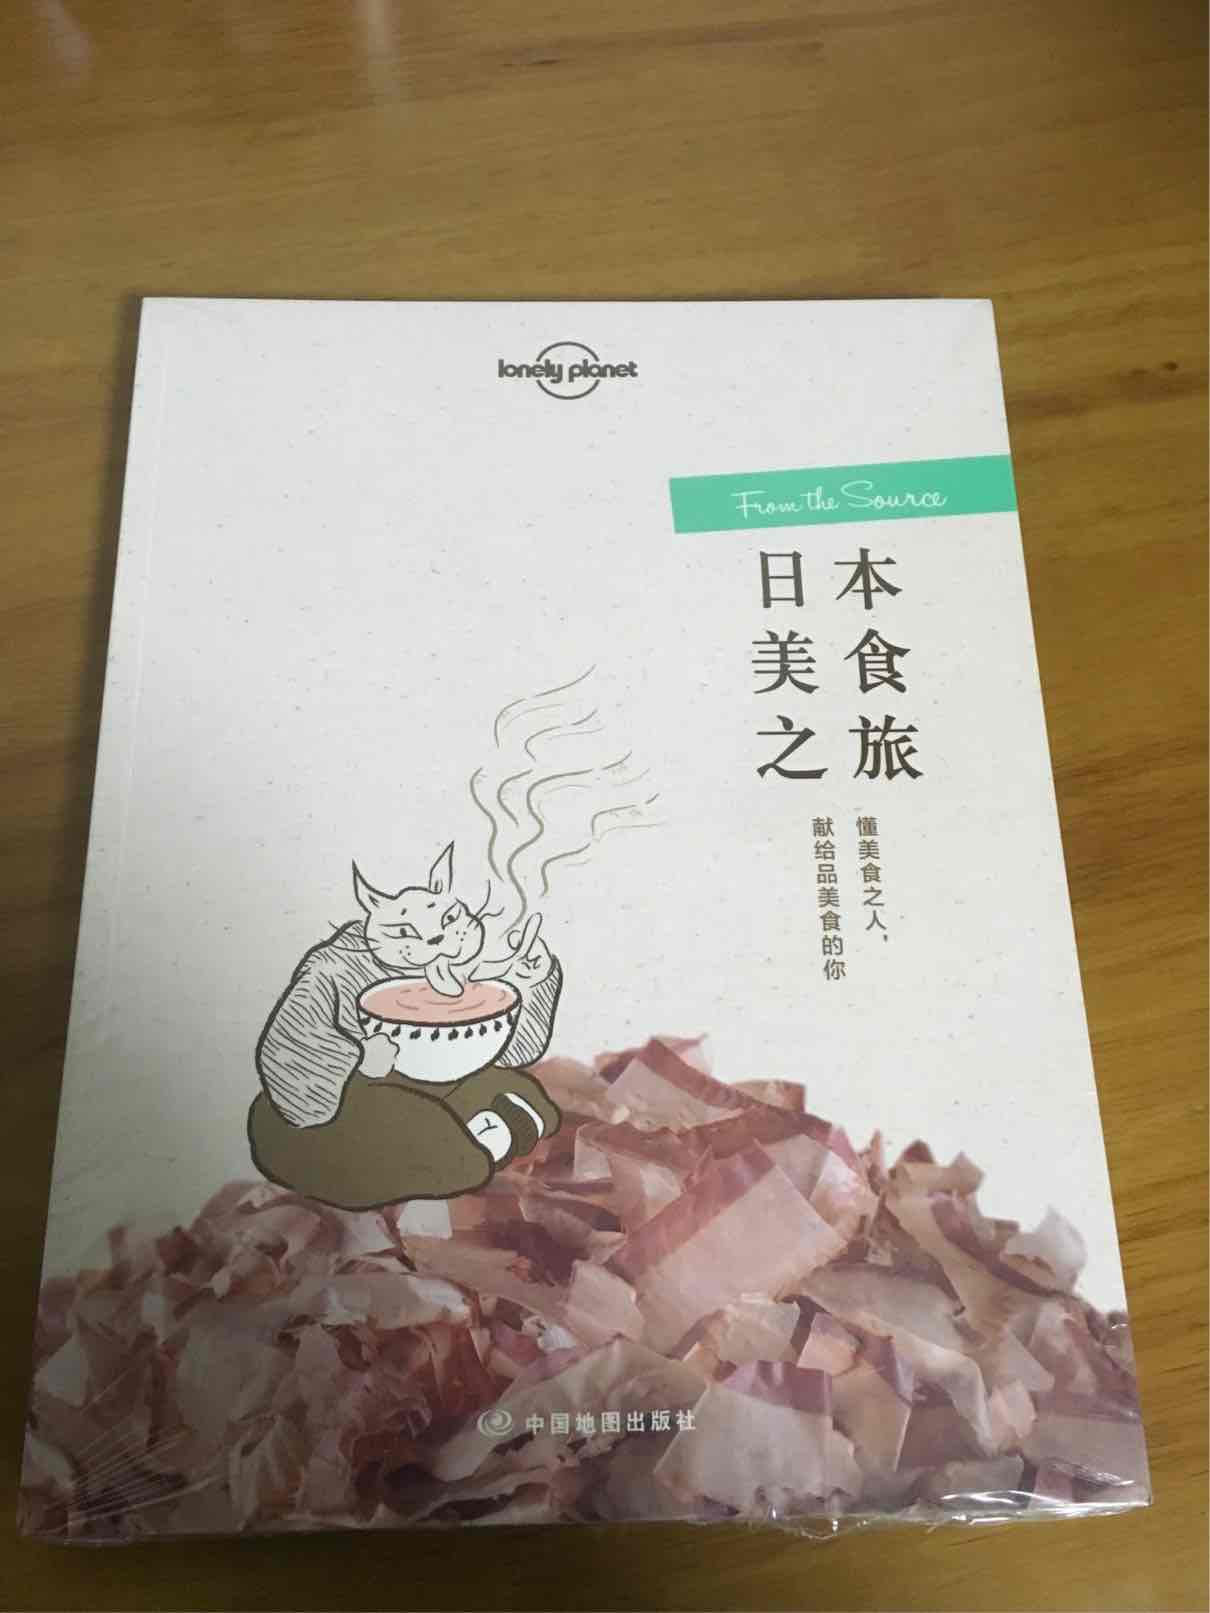 涨知识的一本读物，既有精美配图，也有趣味文字，值得收藏。如果配合孤独的美食家系列，对日本饮食会有更深的了解和记忆。